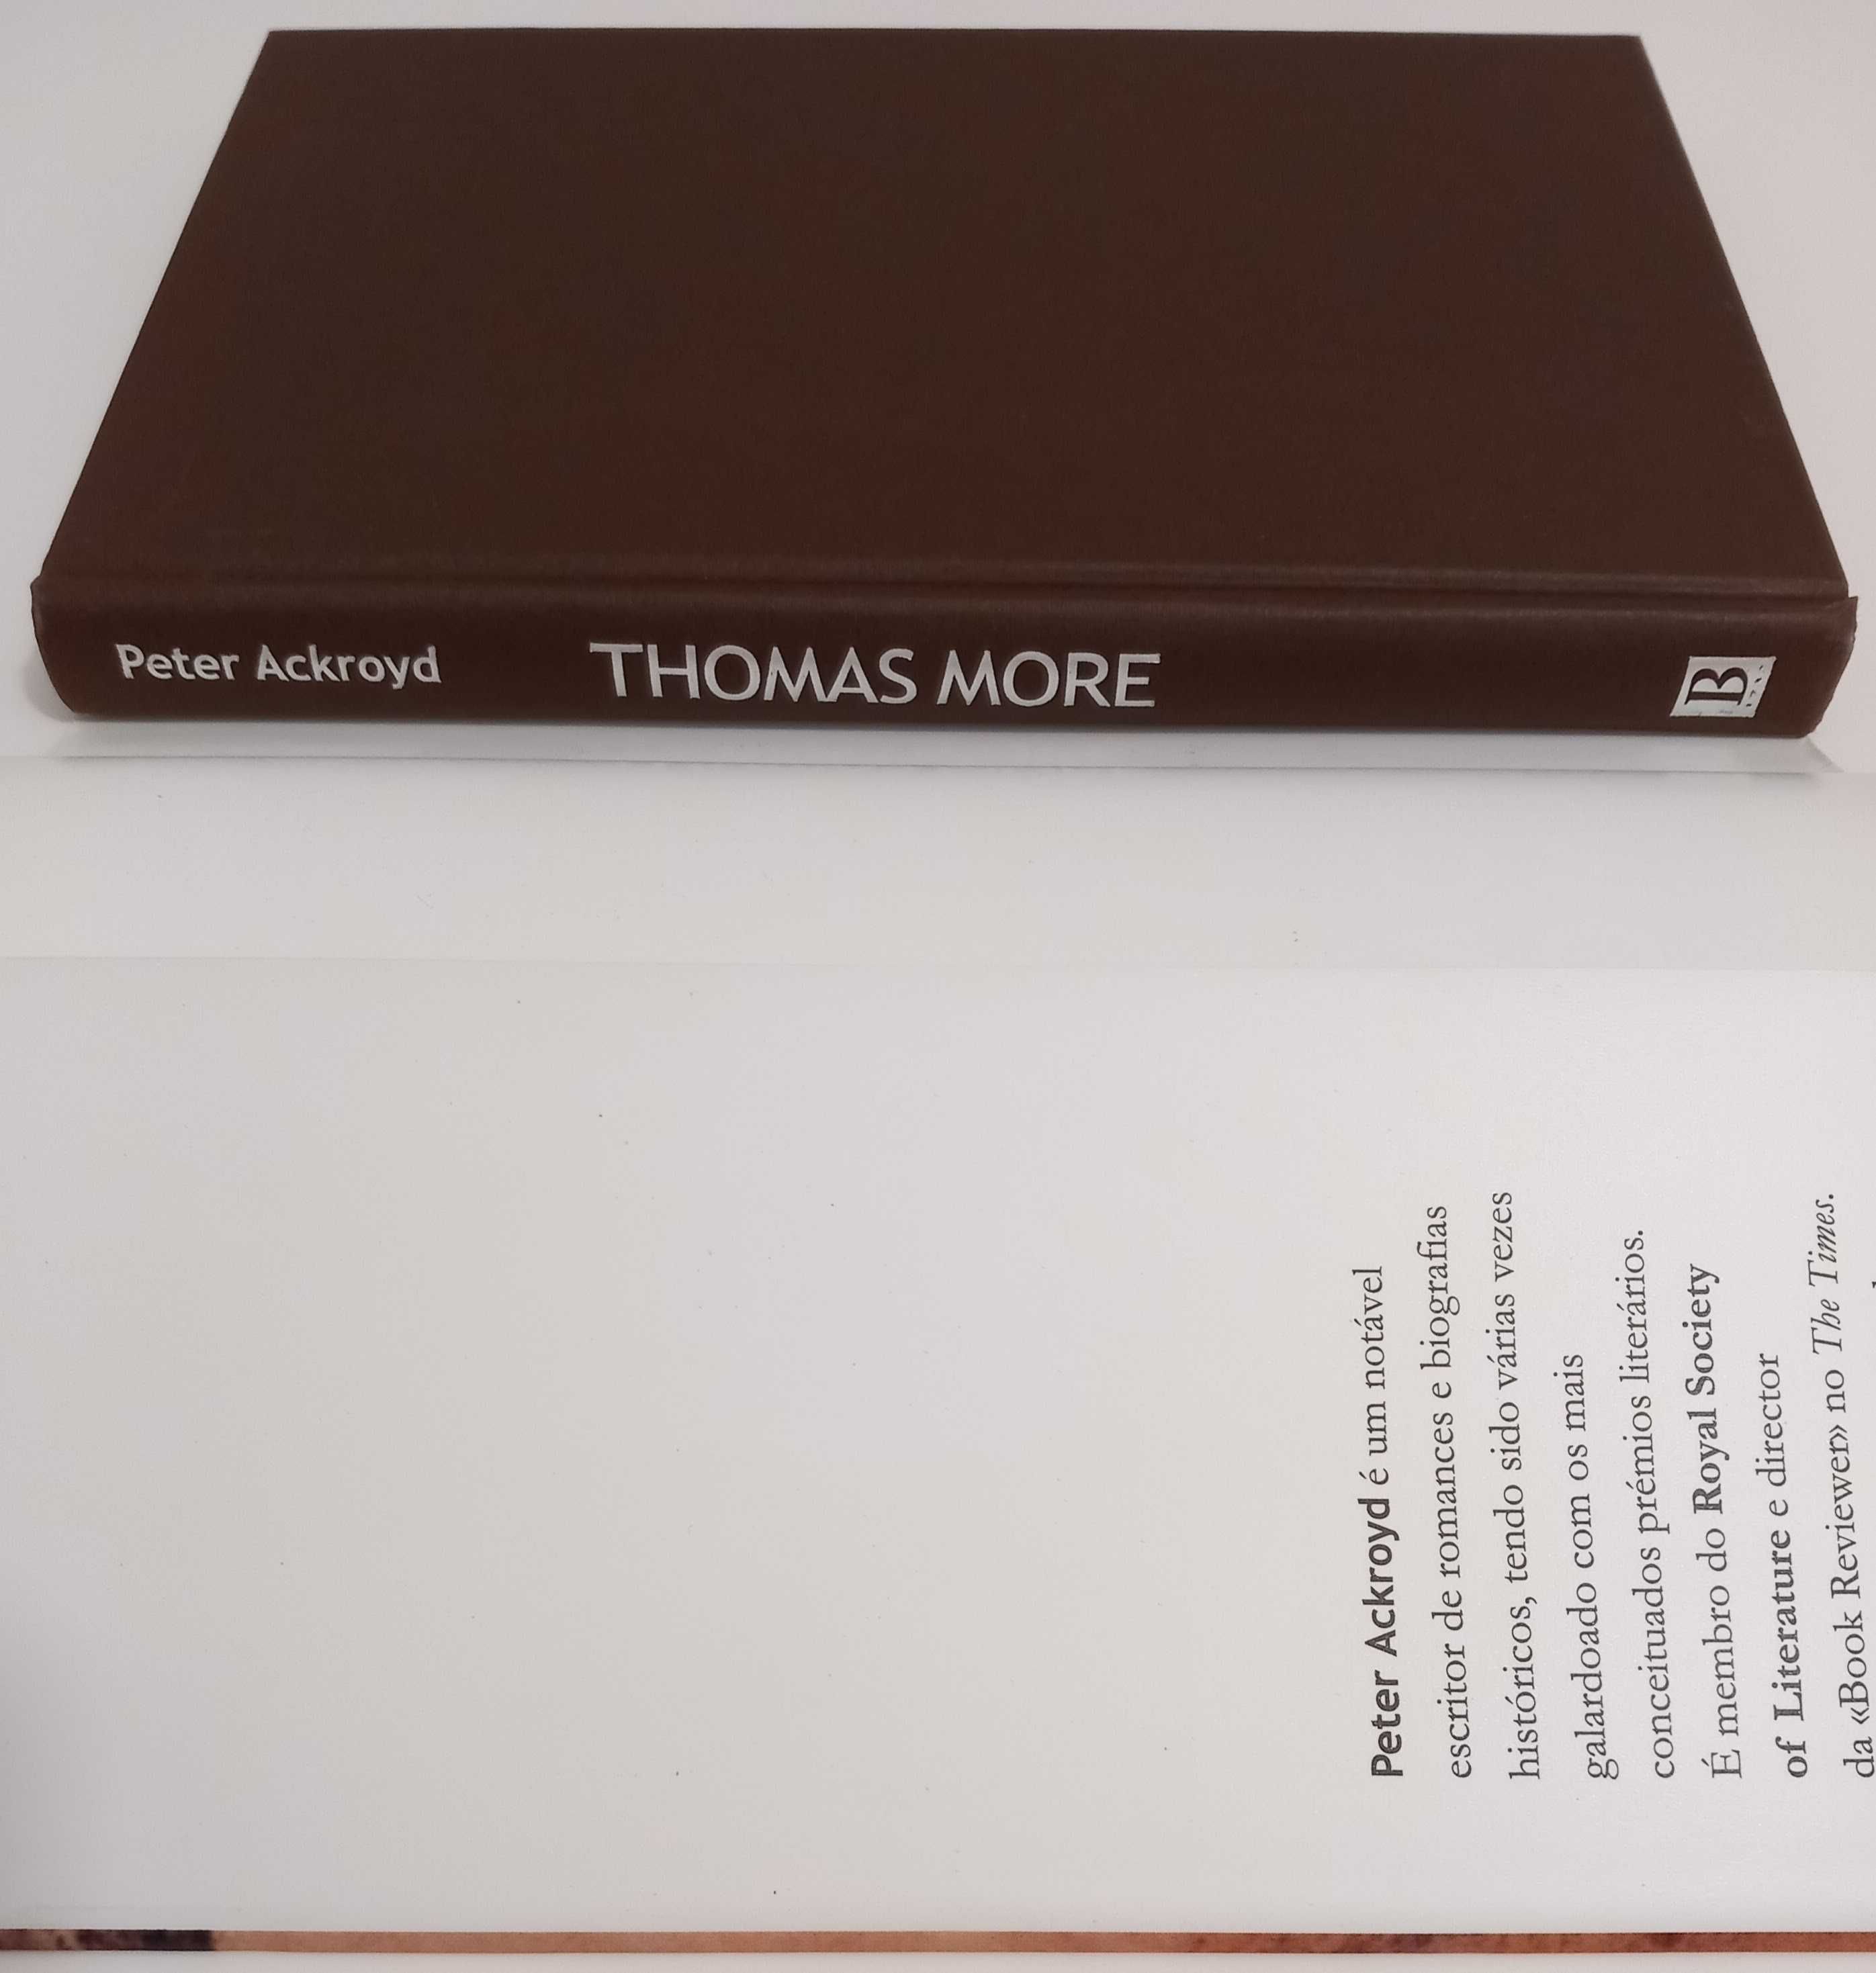 Livro Thomas More Biografia por Peter Ackroyd [Portes Grátis]